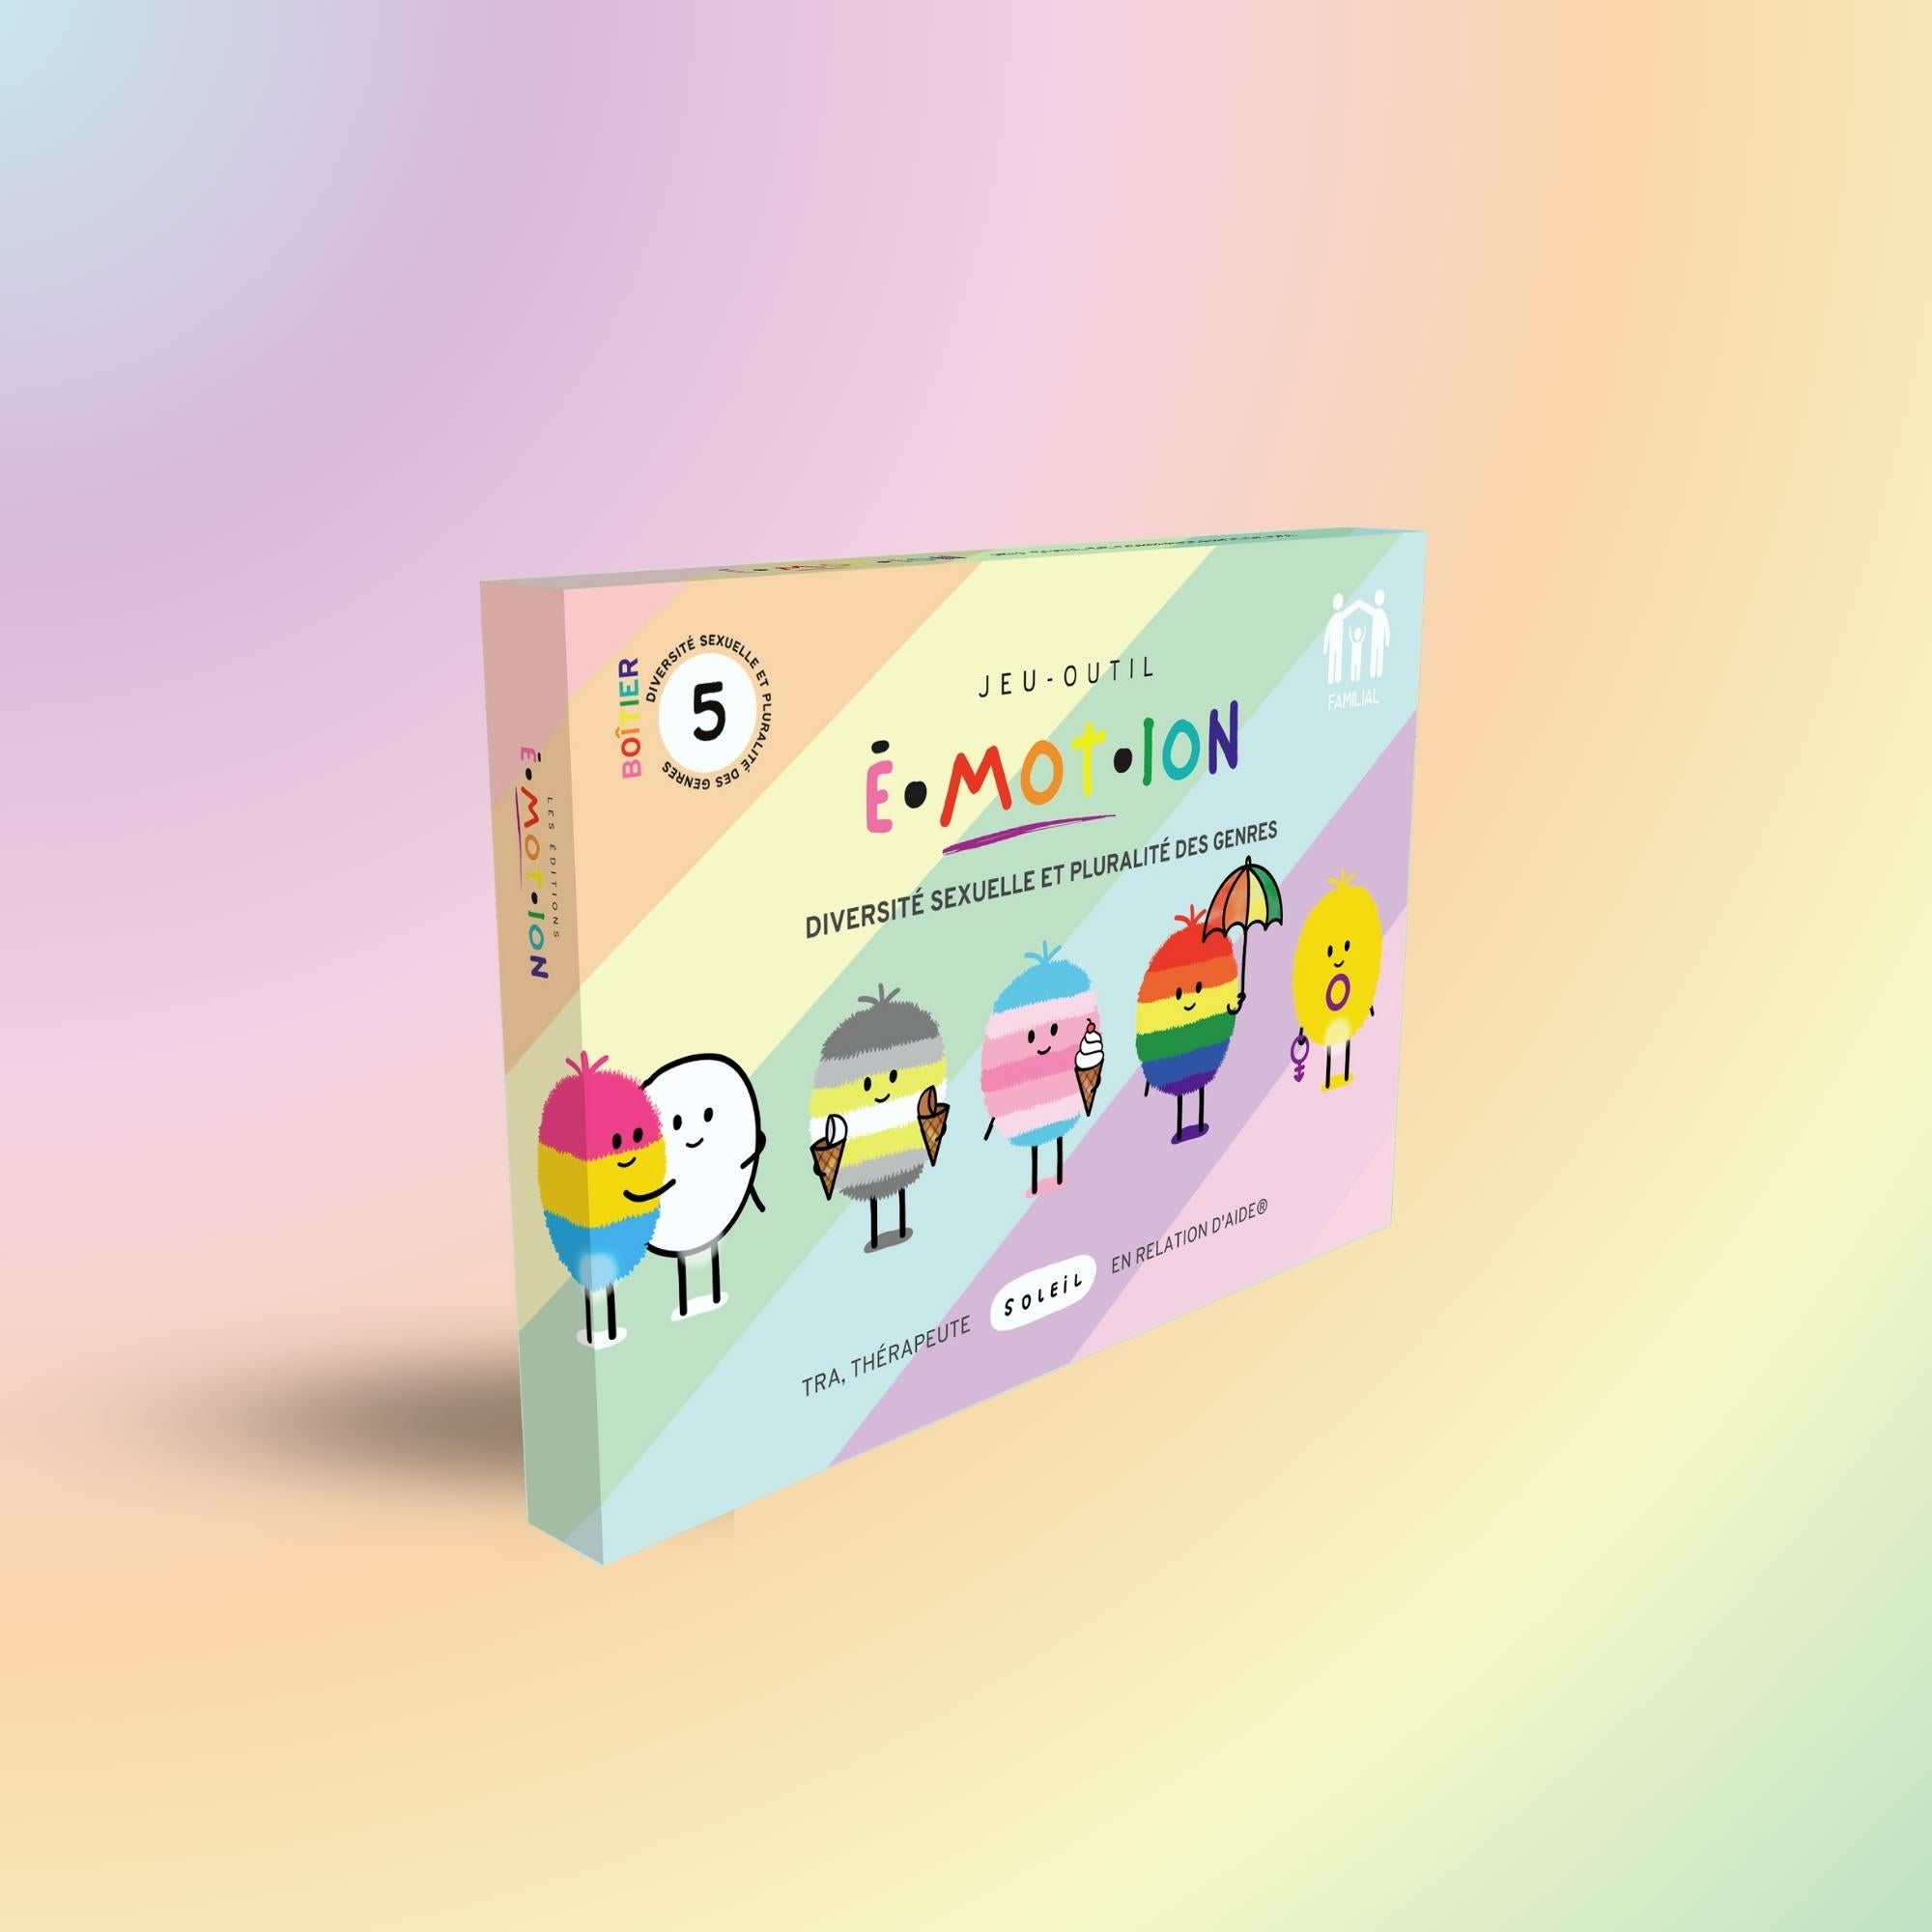 Kit d'outils LGBTQ+ | Éditions Émotion